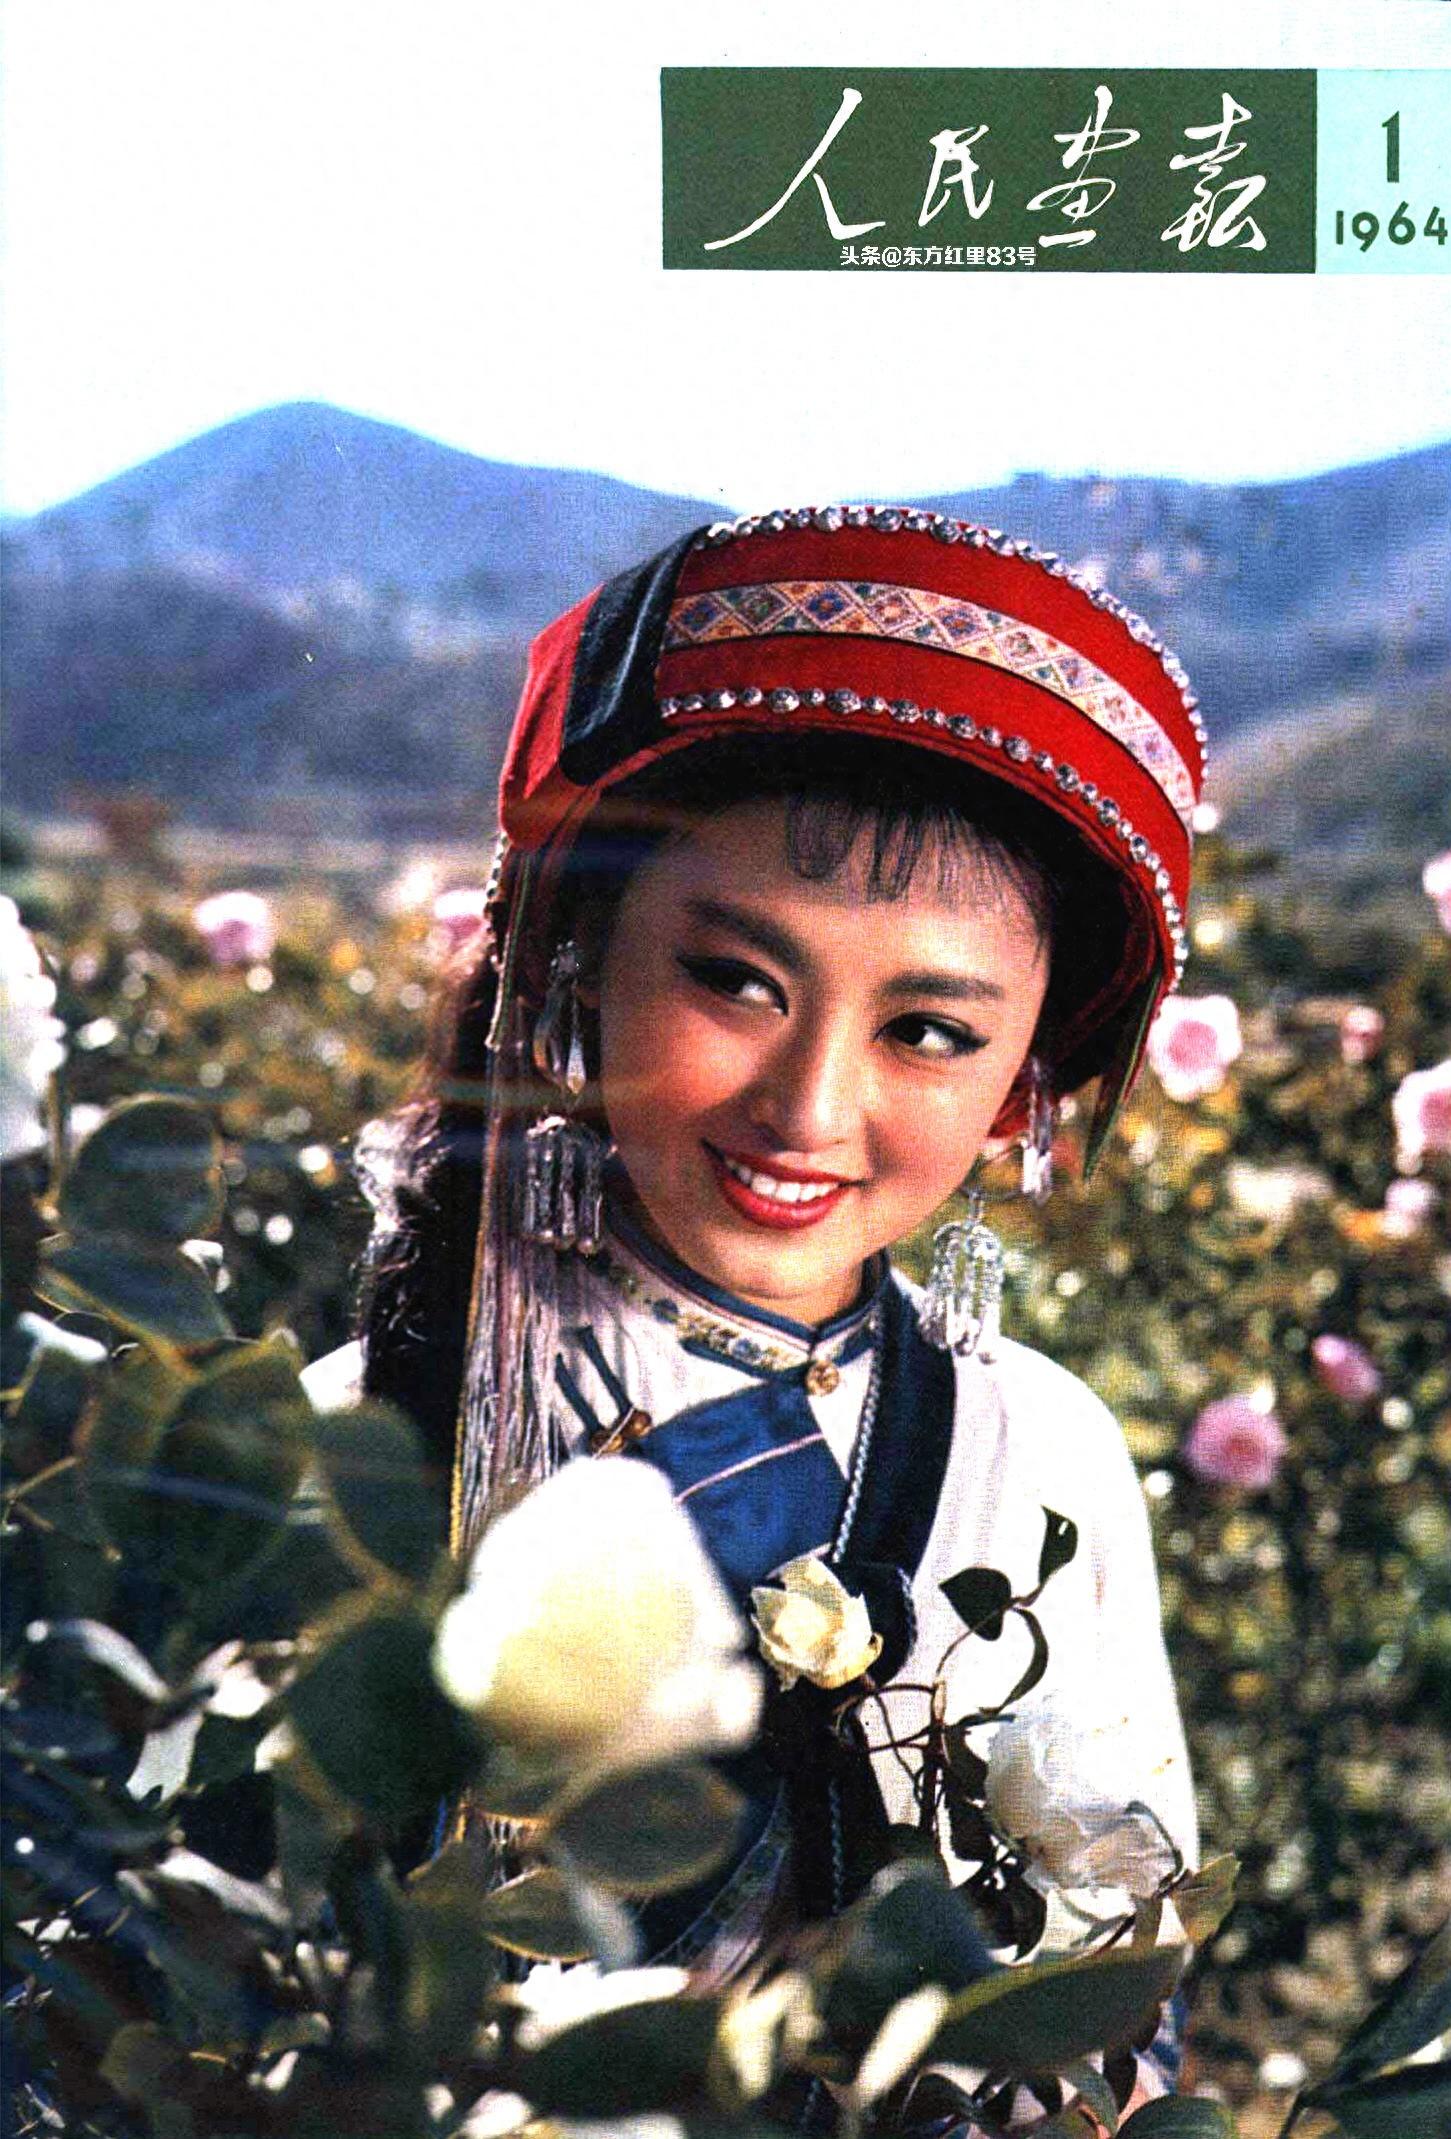 封面照 | 电影《阿诗玛》中的主演杨丽坤-1964年第1期《人民画报》